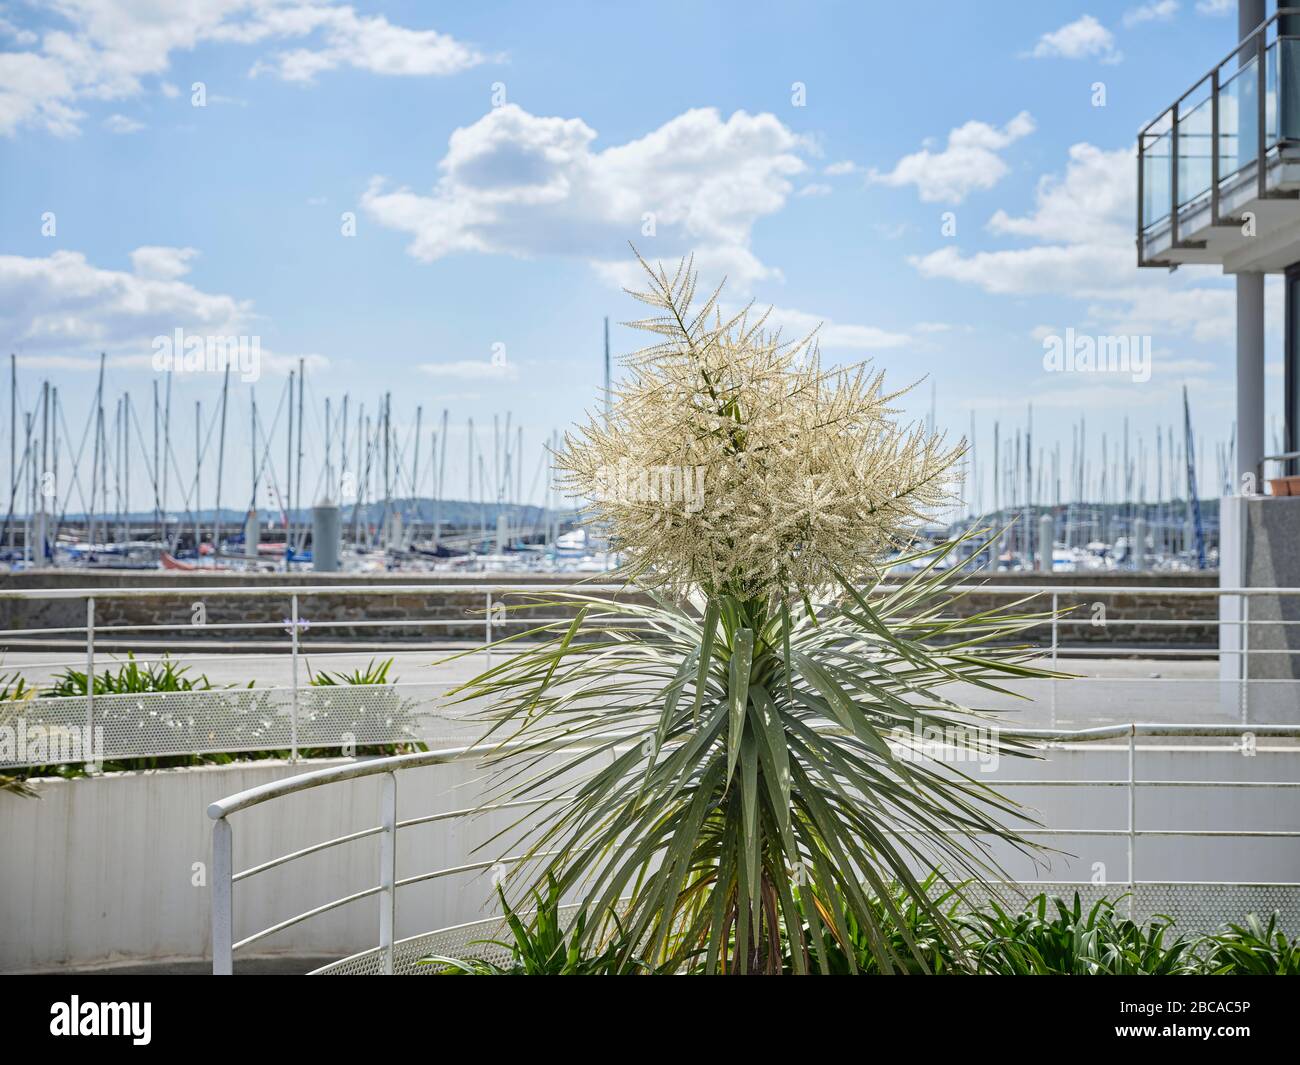 Un albero di palma in fiore all'ingresso di un edificio residenziale presso il porto turistico di Brest in Bretagna. Foto Stock